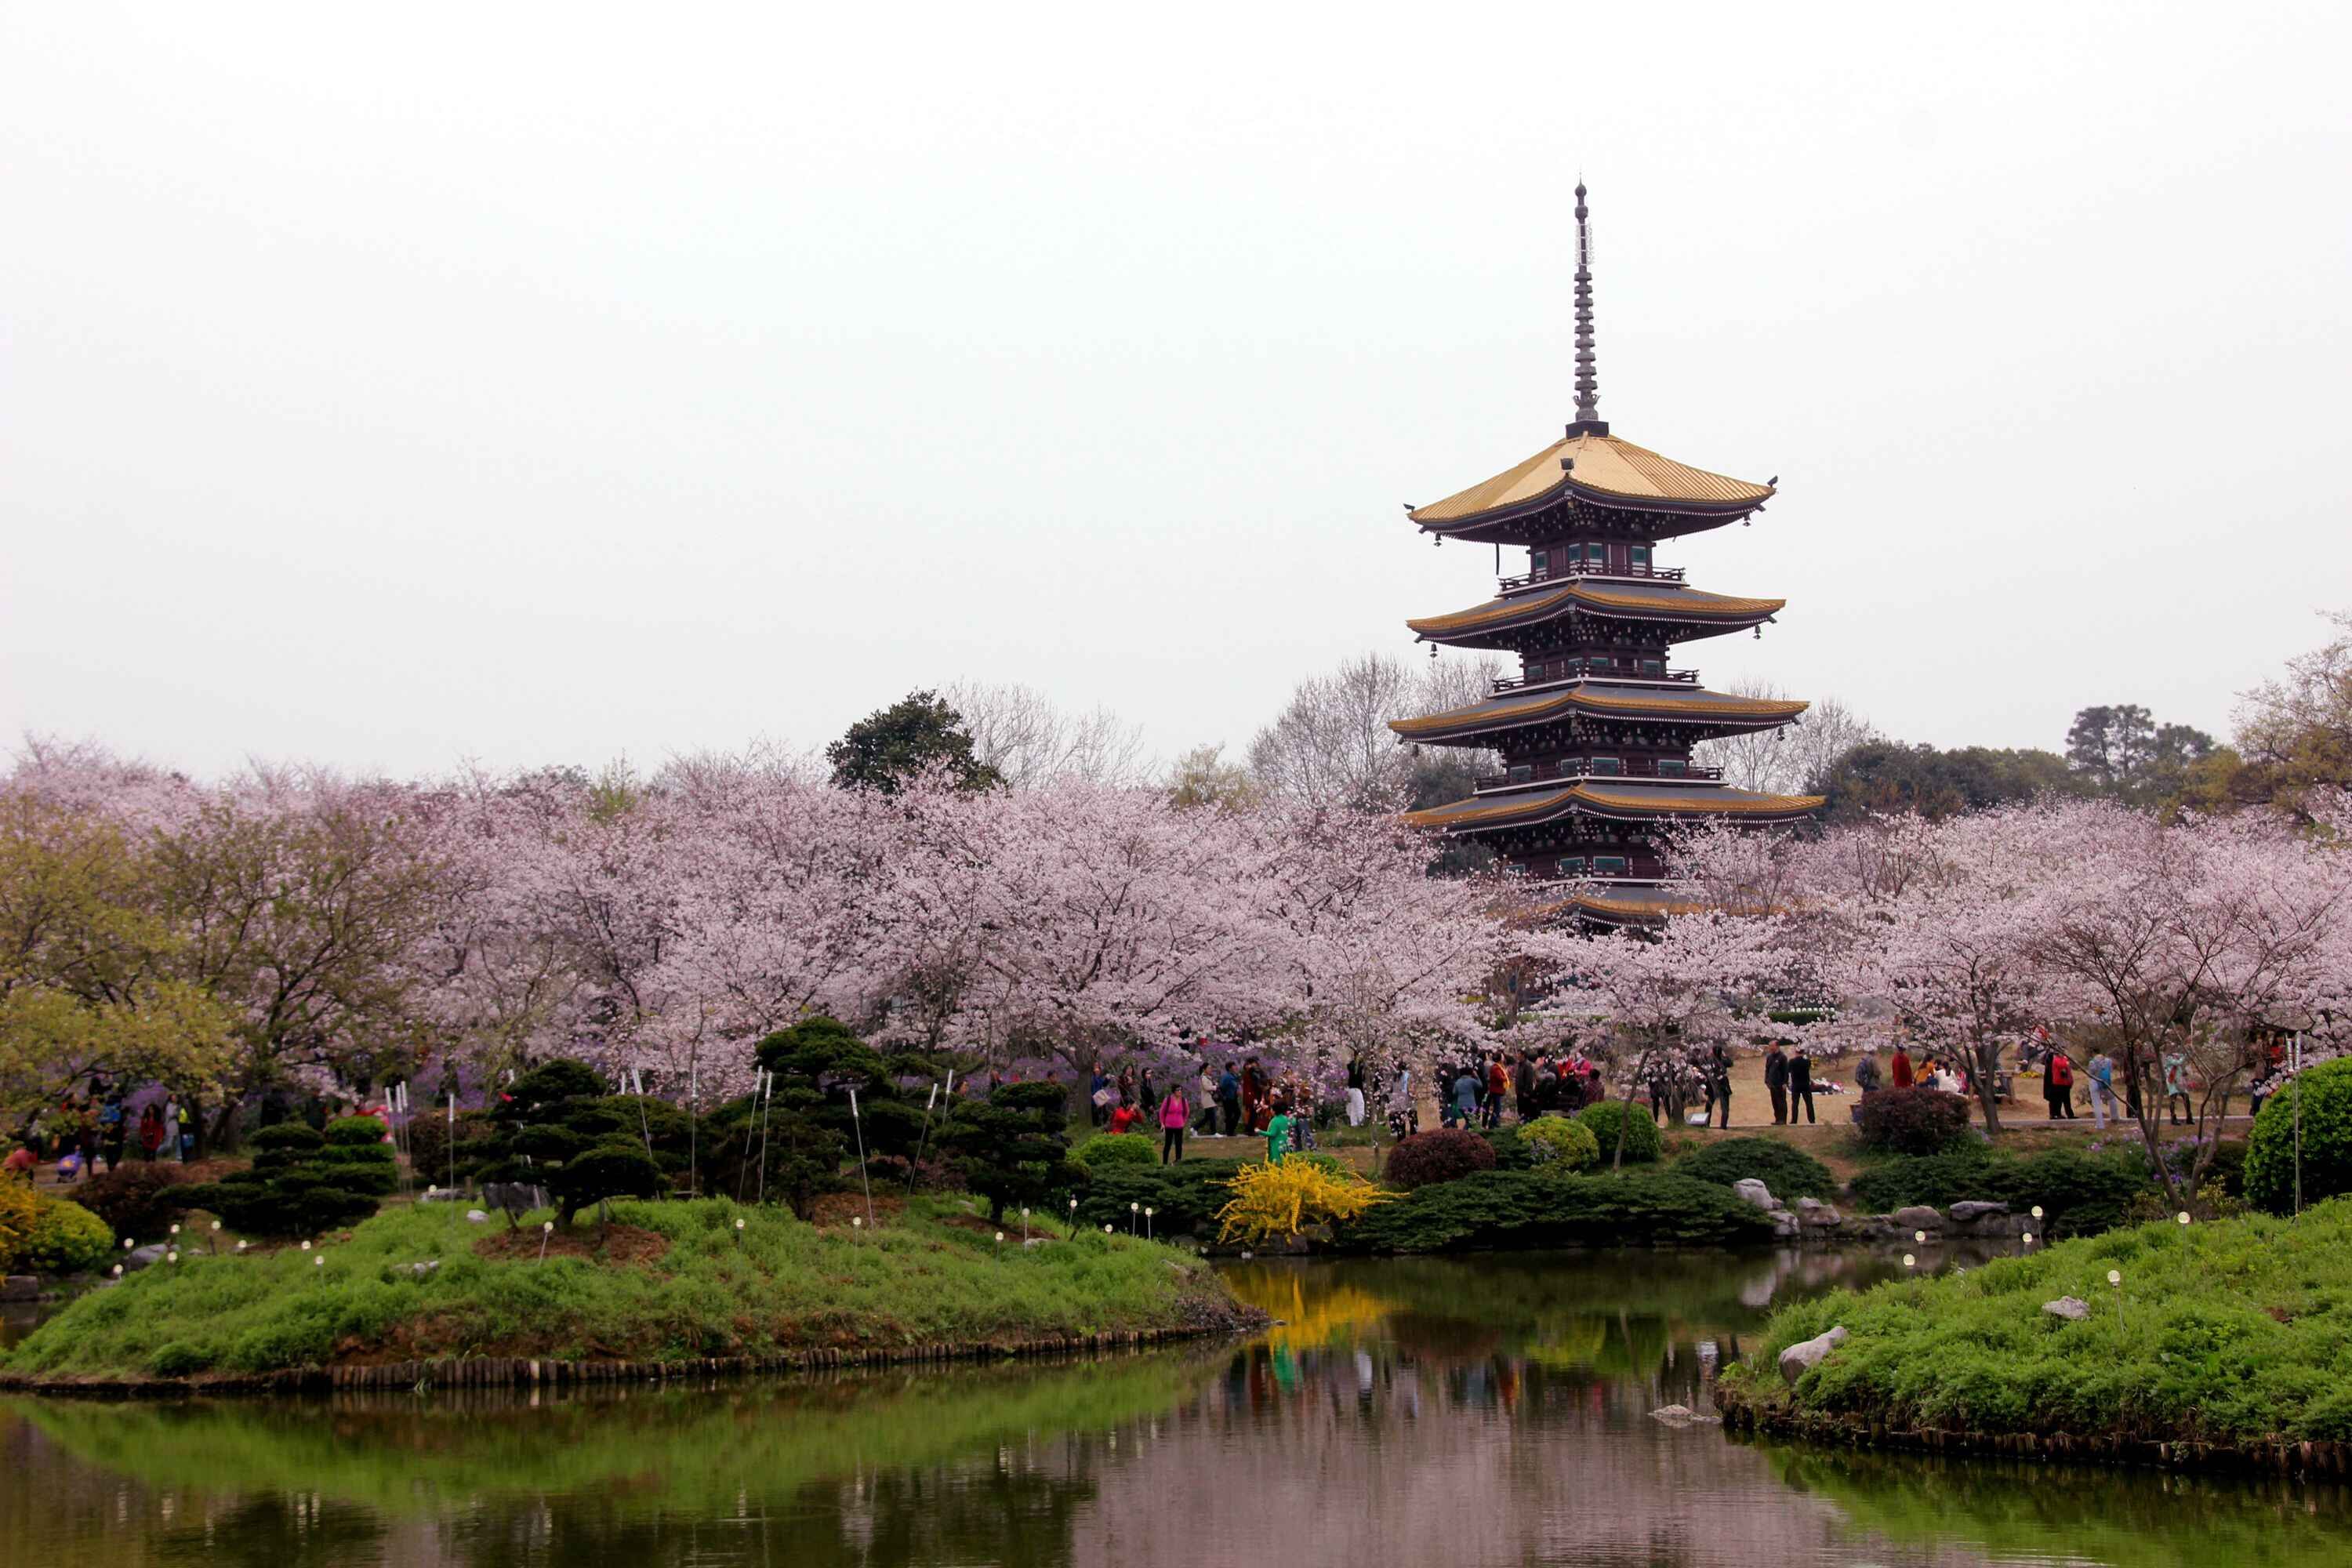 老年大学在武汉磨山拍的樱花美照